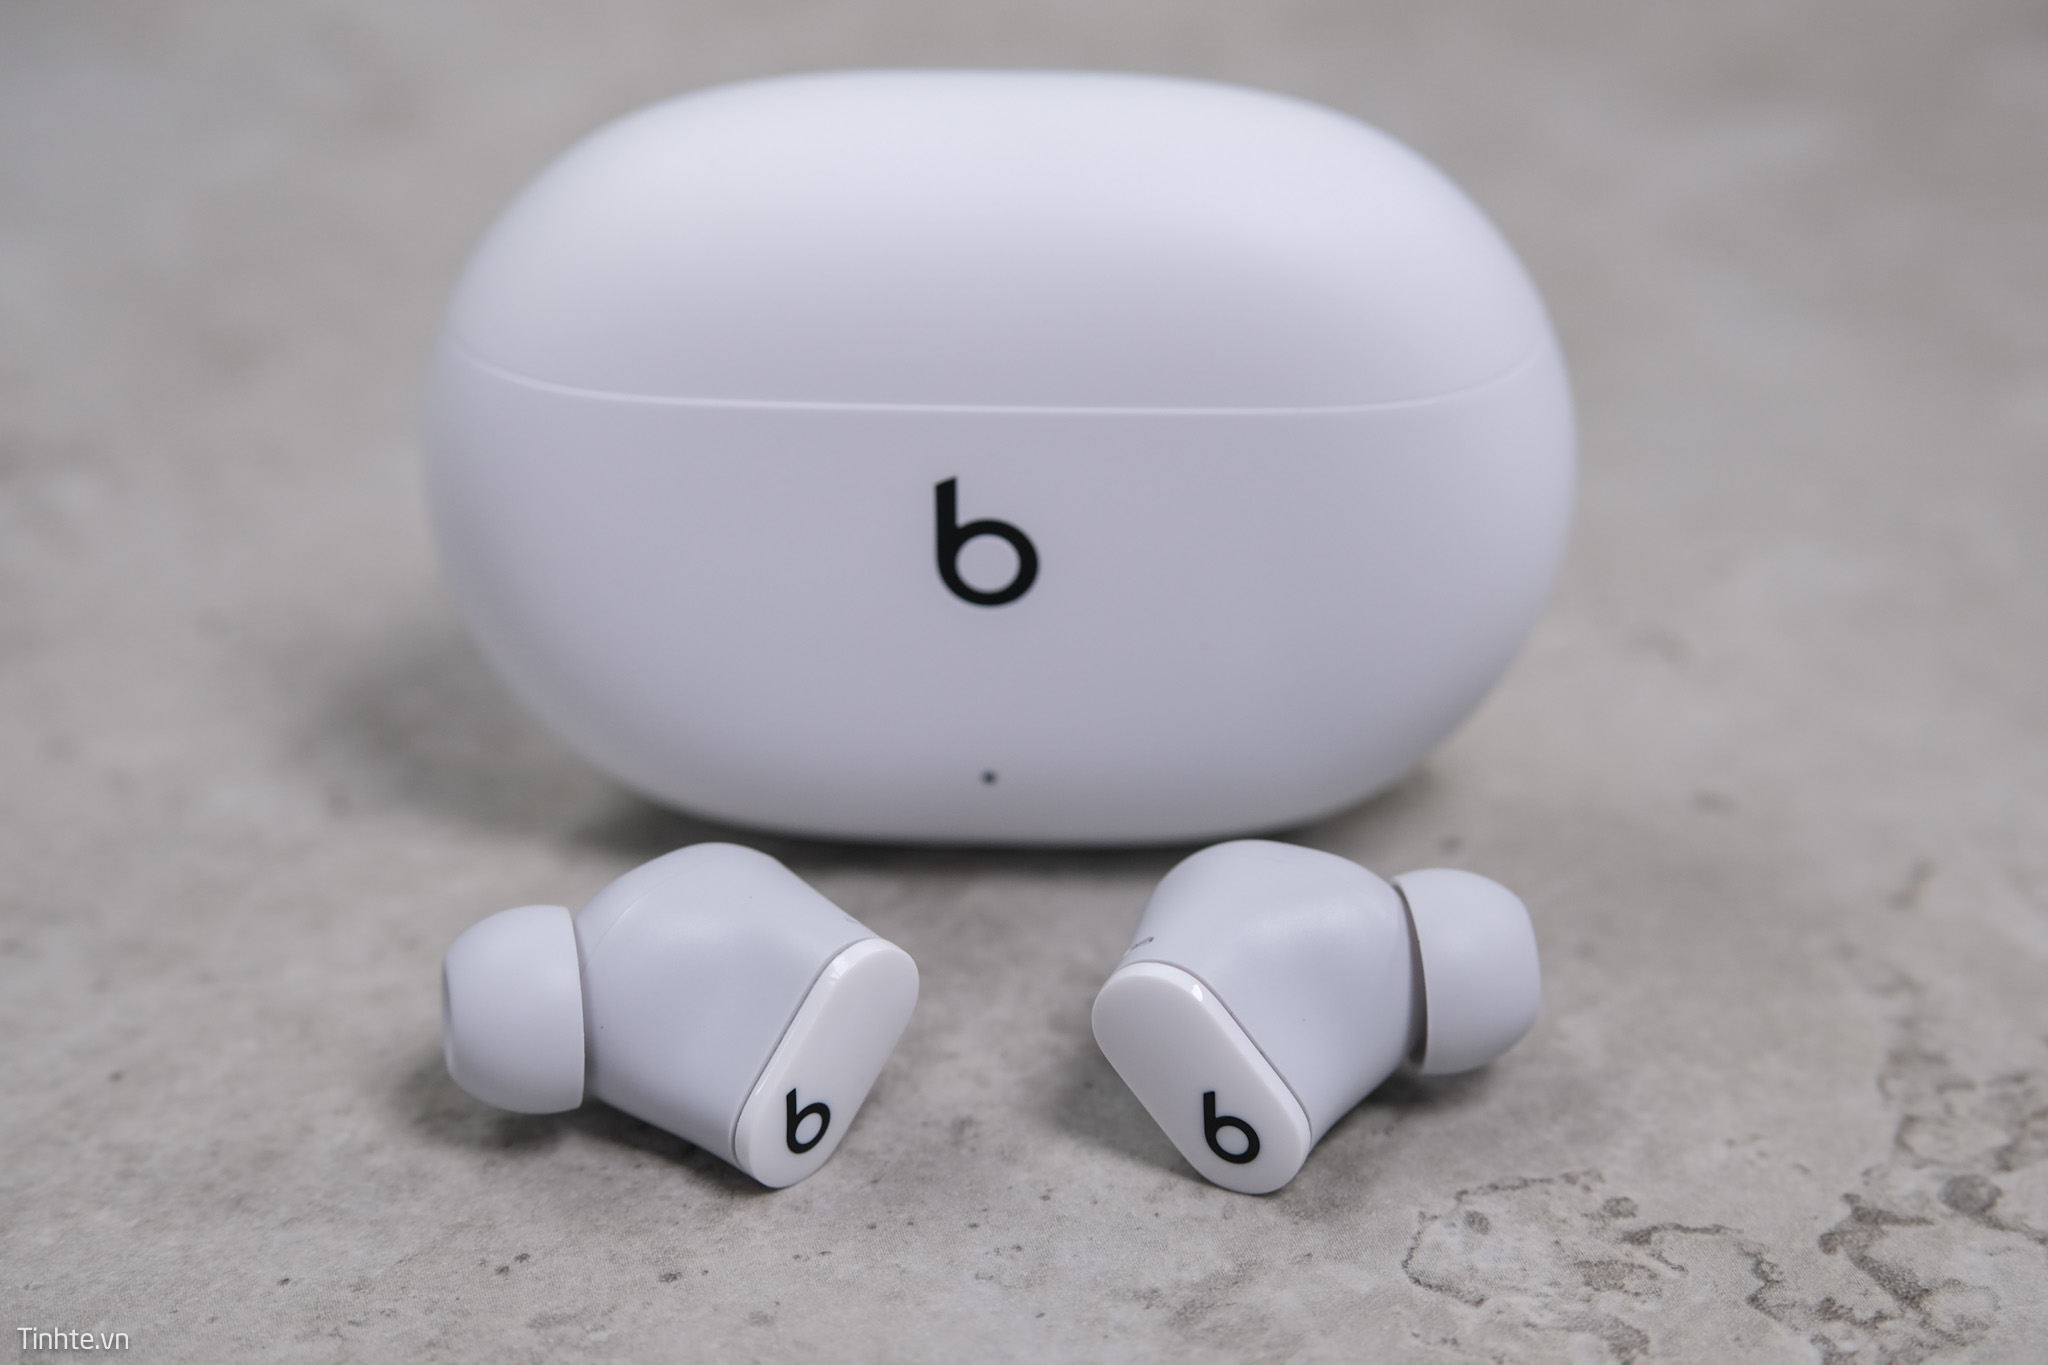 #Tết23: Beats Studio Buds - tai nghe True Wireless giá rẻ đáng cân nhắc để mua dịp Tết